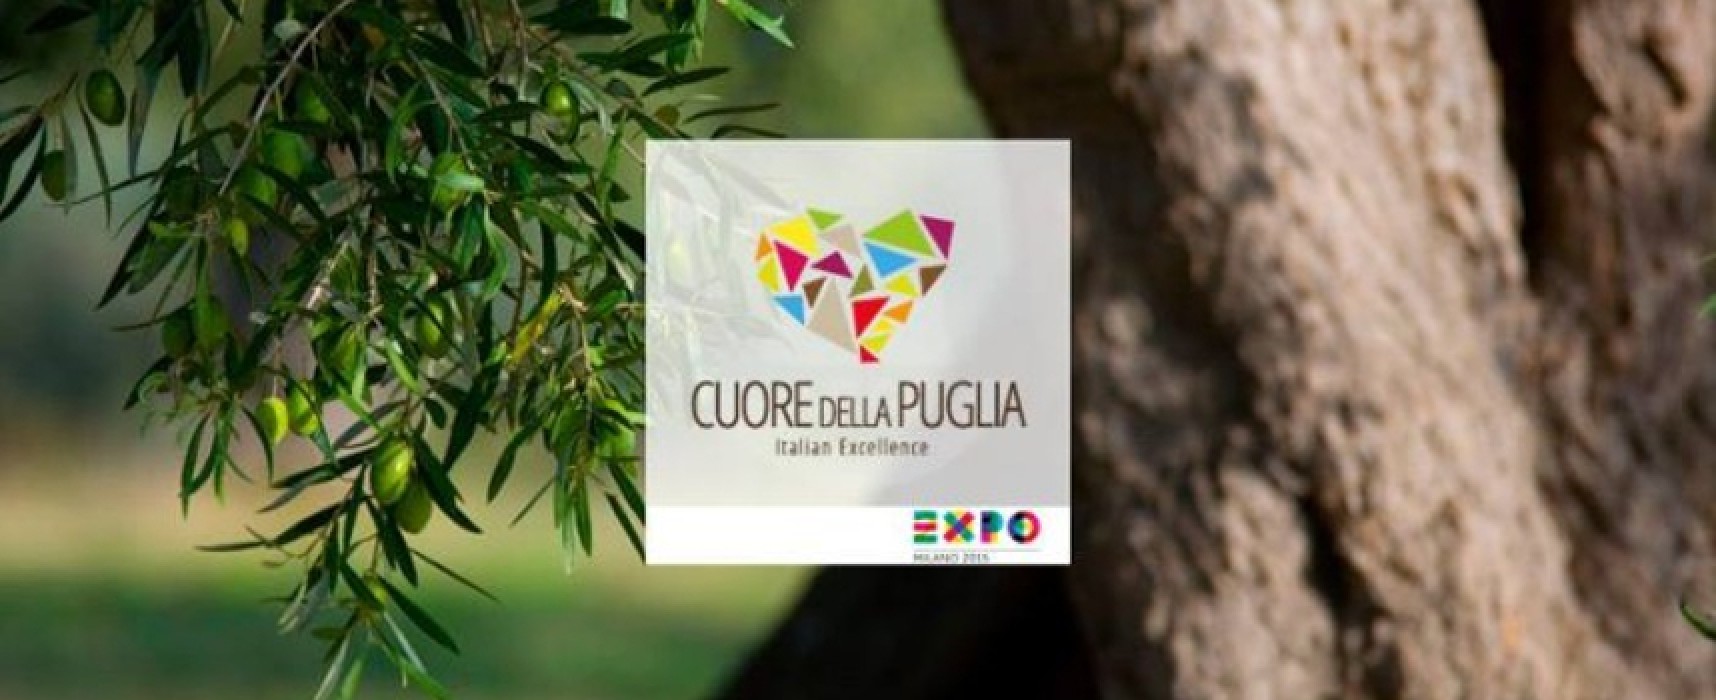 Il Comune di Bisceglie si unisce a “Cuore della Puglia” e promuove il concorso di cortometraggi in vista di Expo 2015